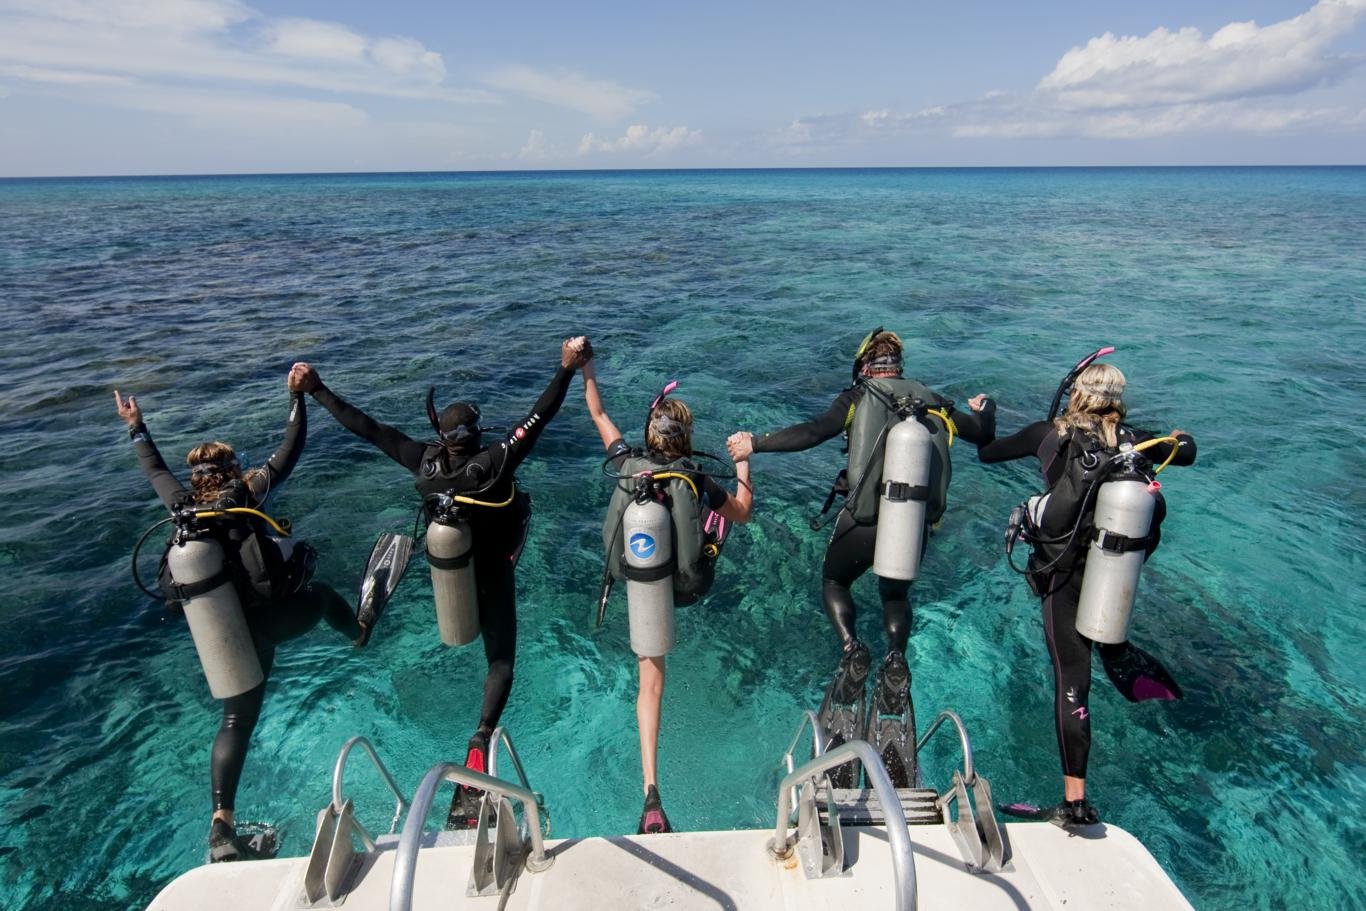 Green Island - Lyudao - SCUBA Diving in Taiwan - Dive O'Clock!